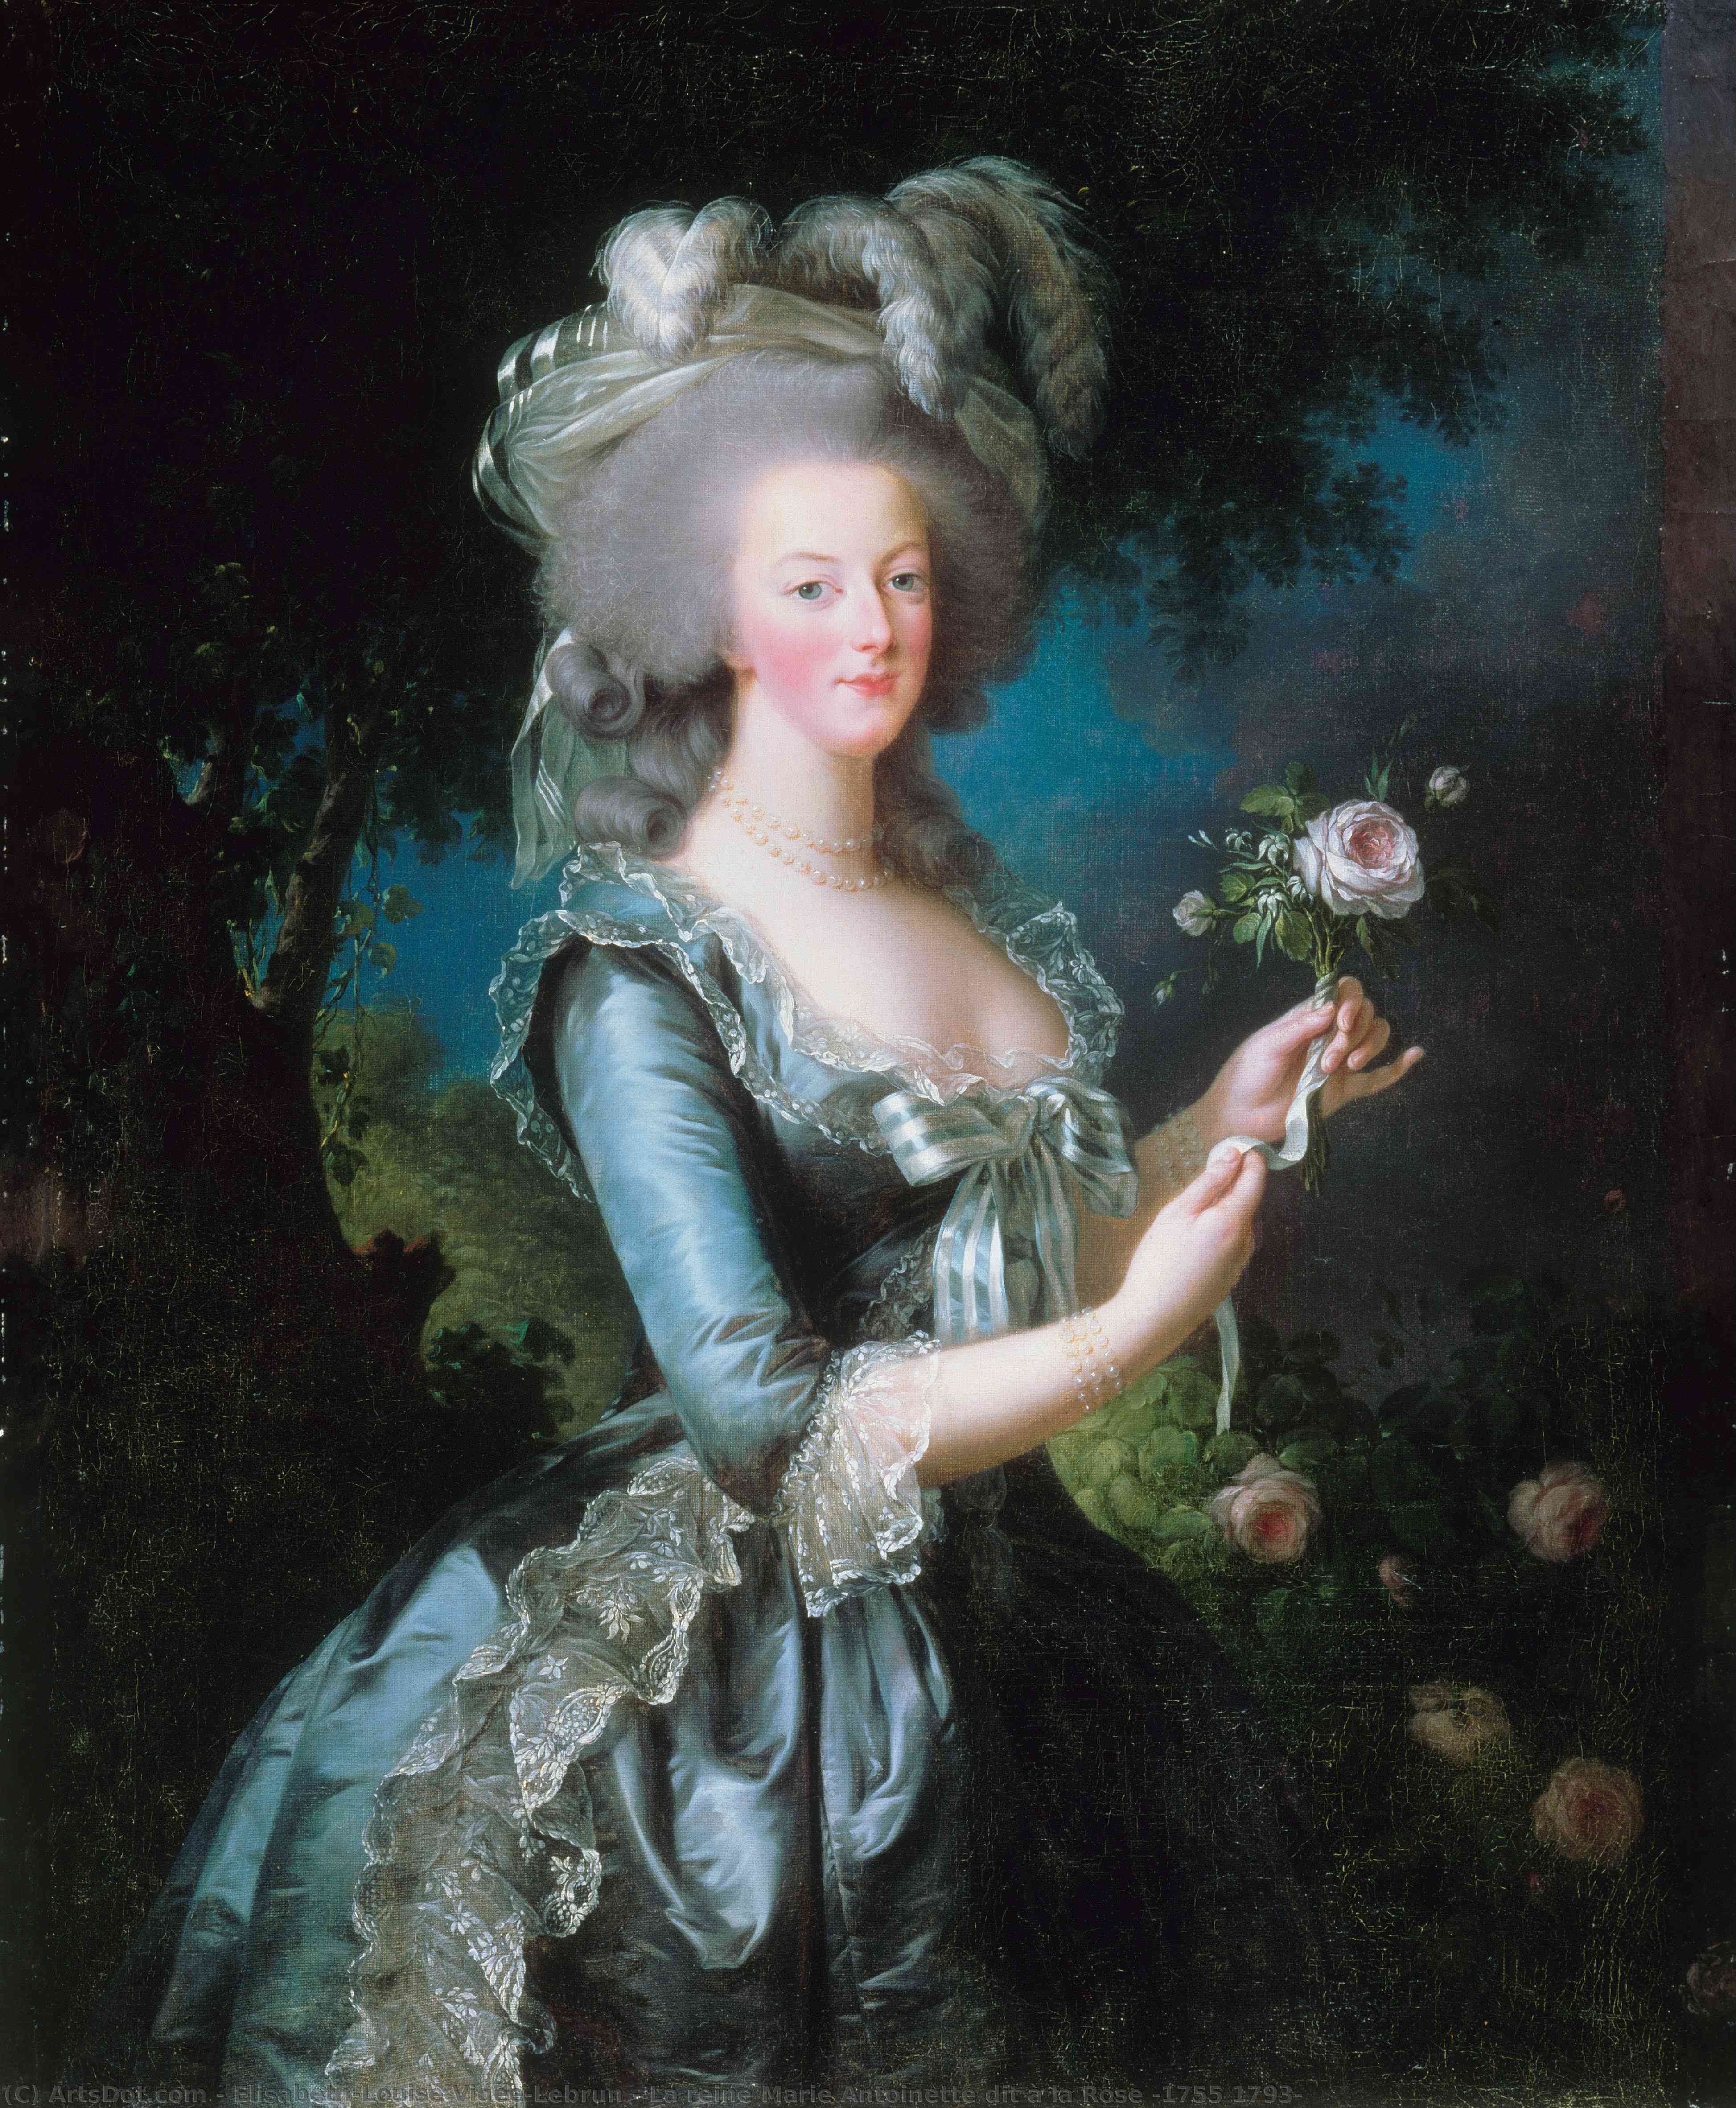 Wikioo.org - The Encyclopedia of Fine Arts - Painting, Artwork by Elisabeth-Louise Vigée-Lebrun - La reine Marie Antoinette dit à la Rose (1755 1793)